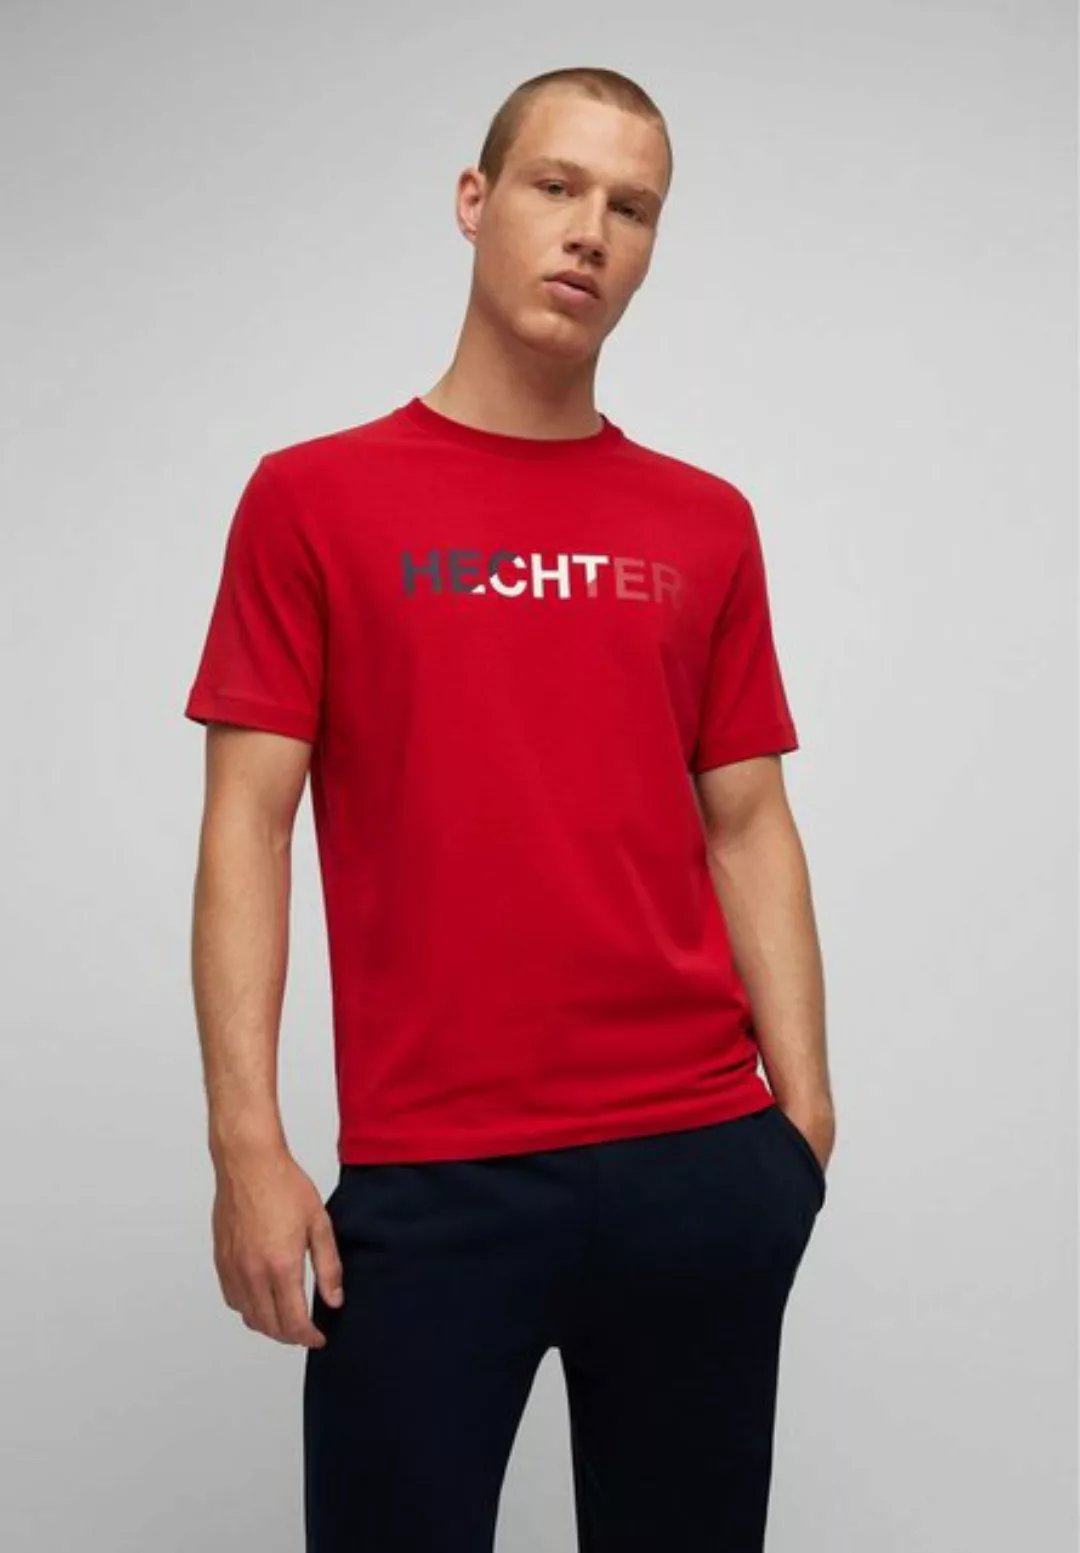 HECHTER PARIS T-Shirt mit langen Ärmeln günstig online kaufen